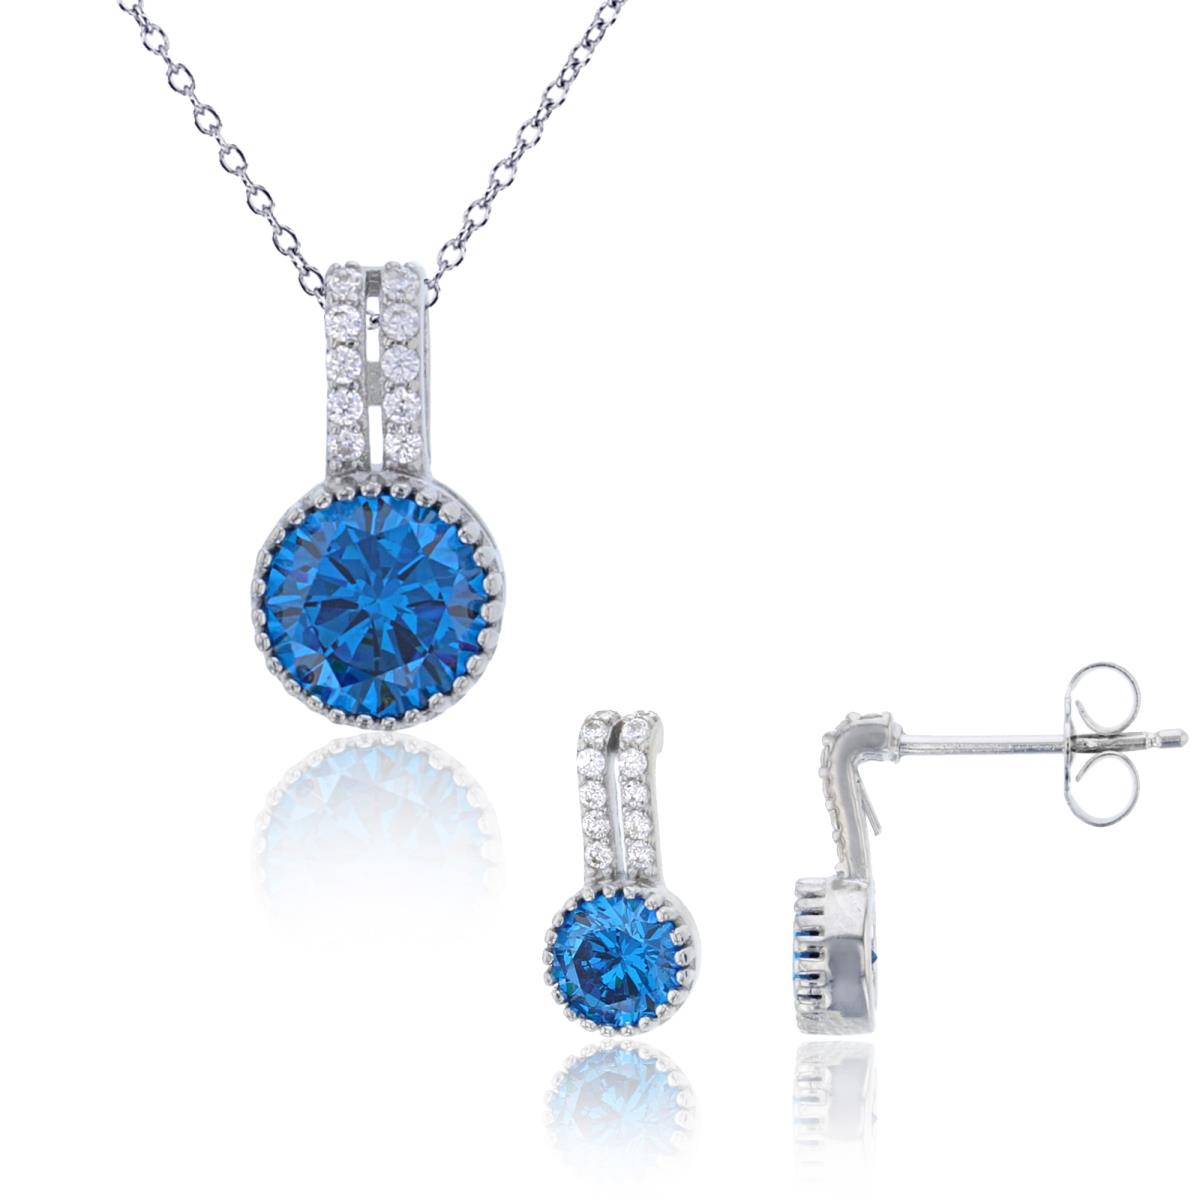 Sterling Silver Rhodium 7mm Round Dark Blue CZ Milgrain 18" Necklace & Earring Set